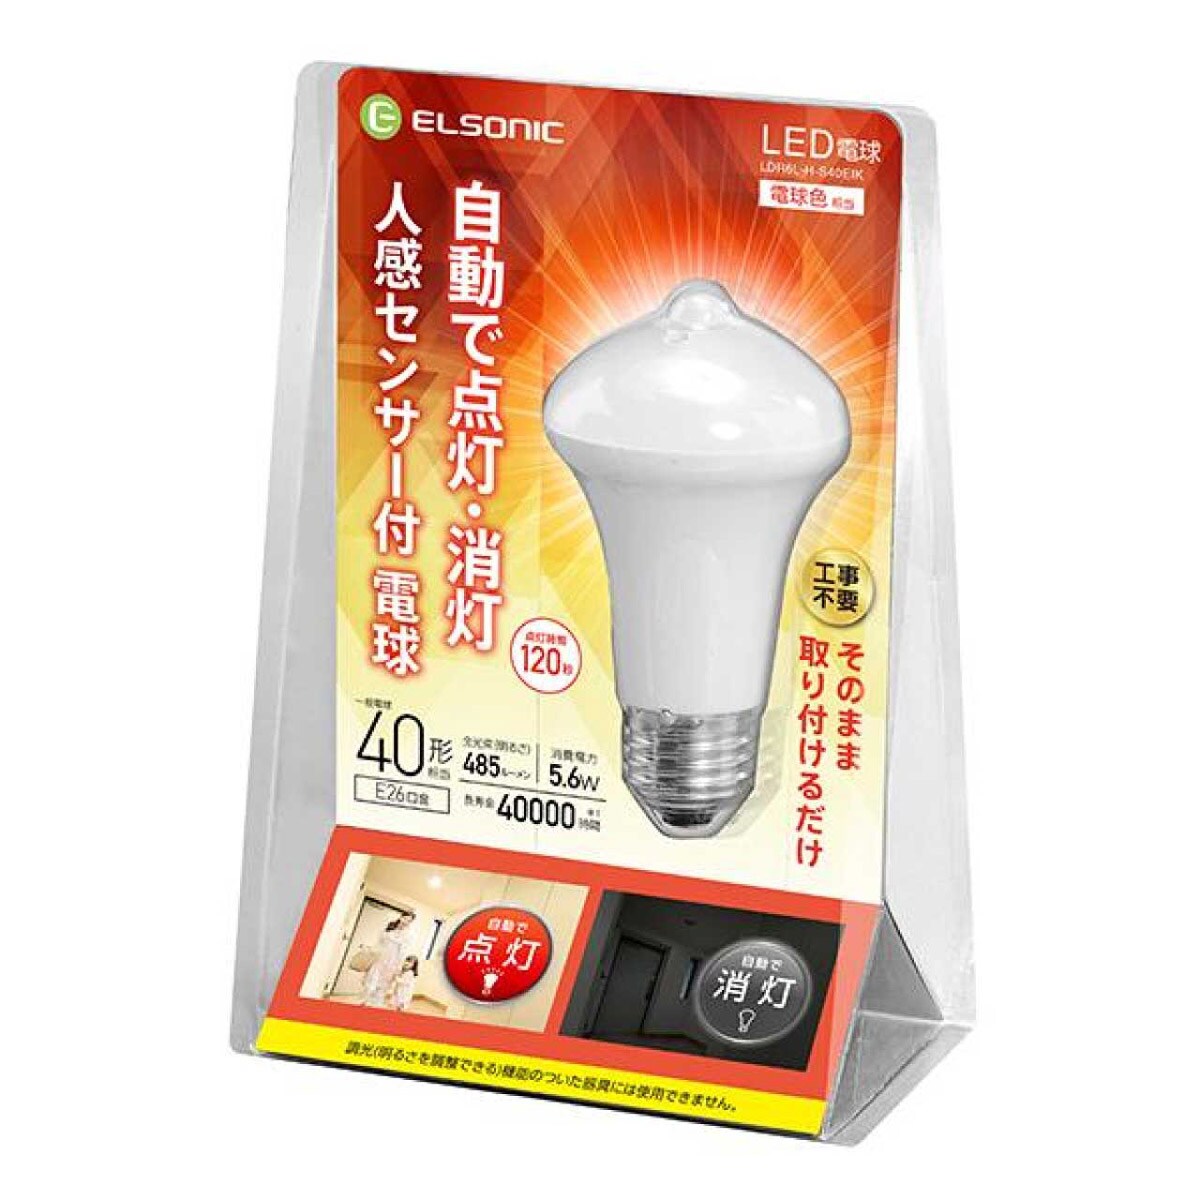 専門店ではLED電球 人感センサー付き電球 40形 照明